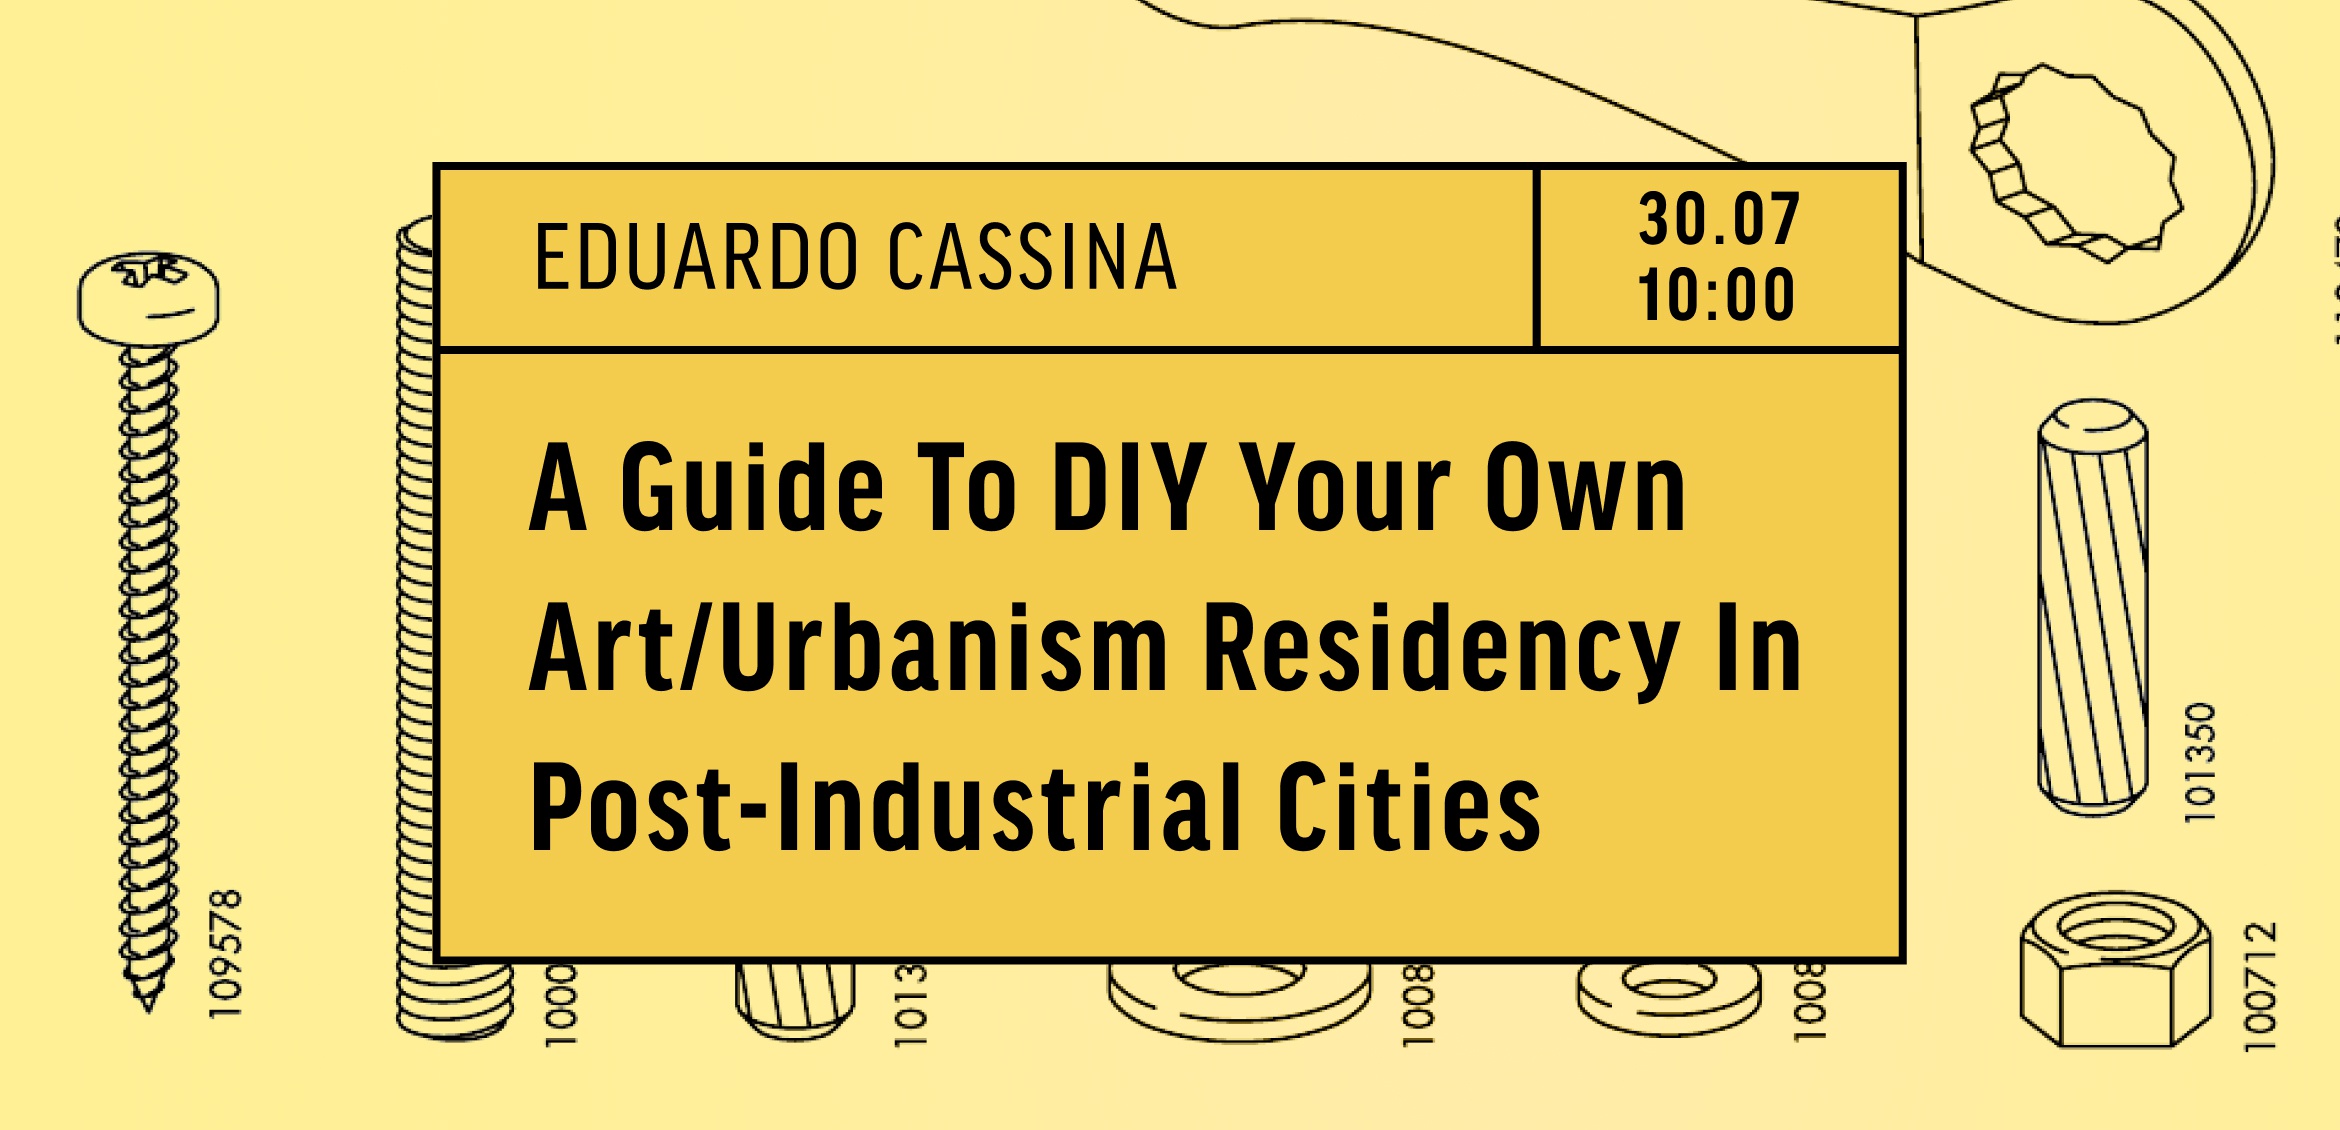 РЕЗИДЕНЦІЇ: посібник, як самостійно створювати мистецькі/урбаністичні резиденції у постіндустріальних містах